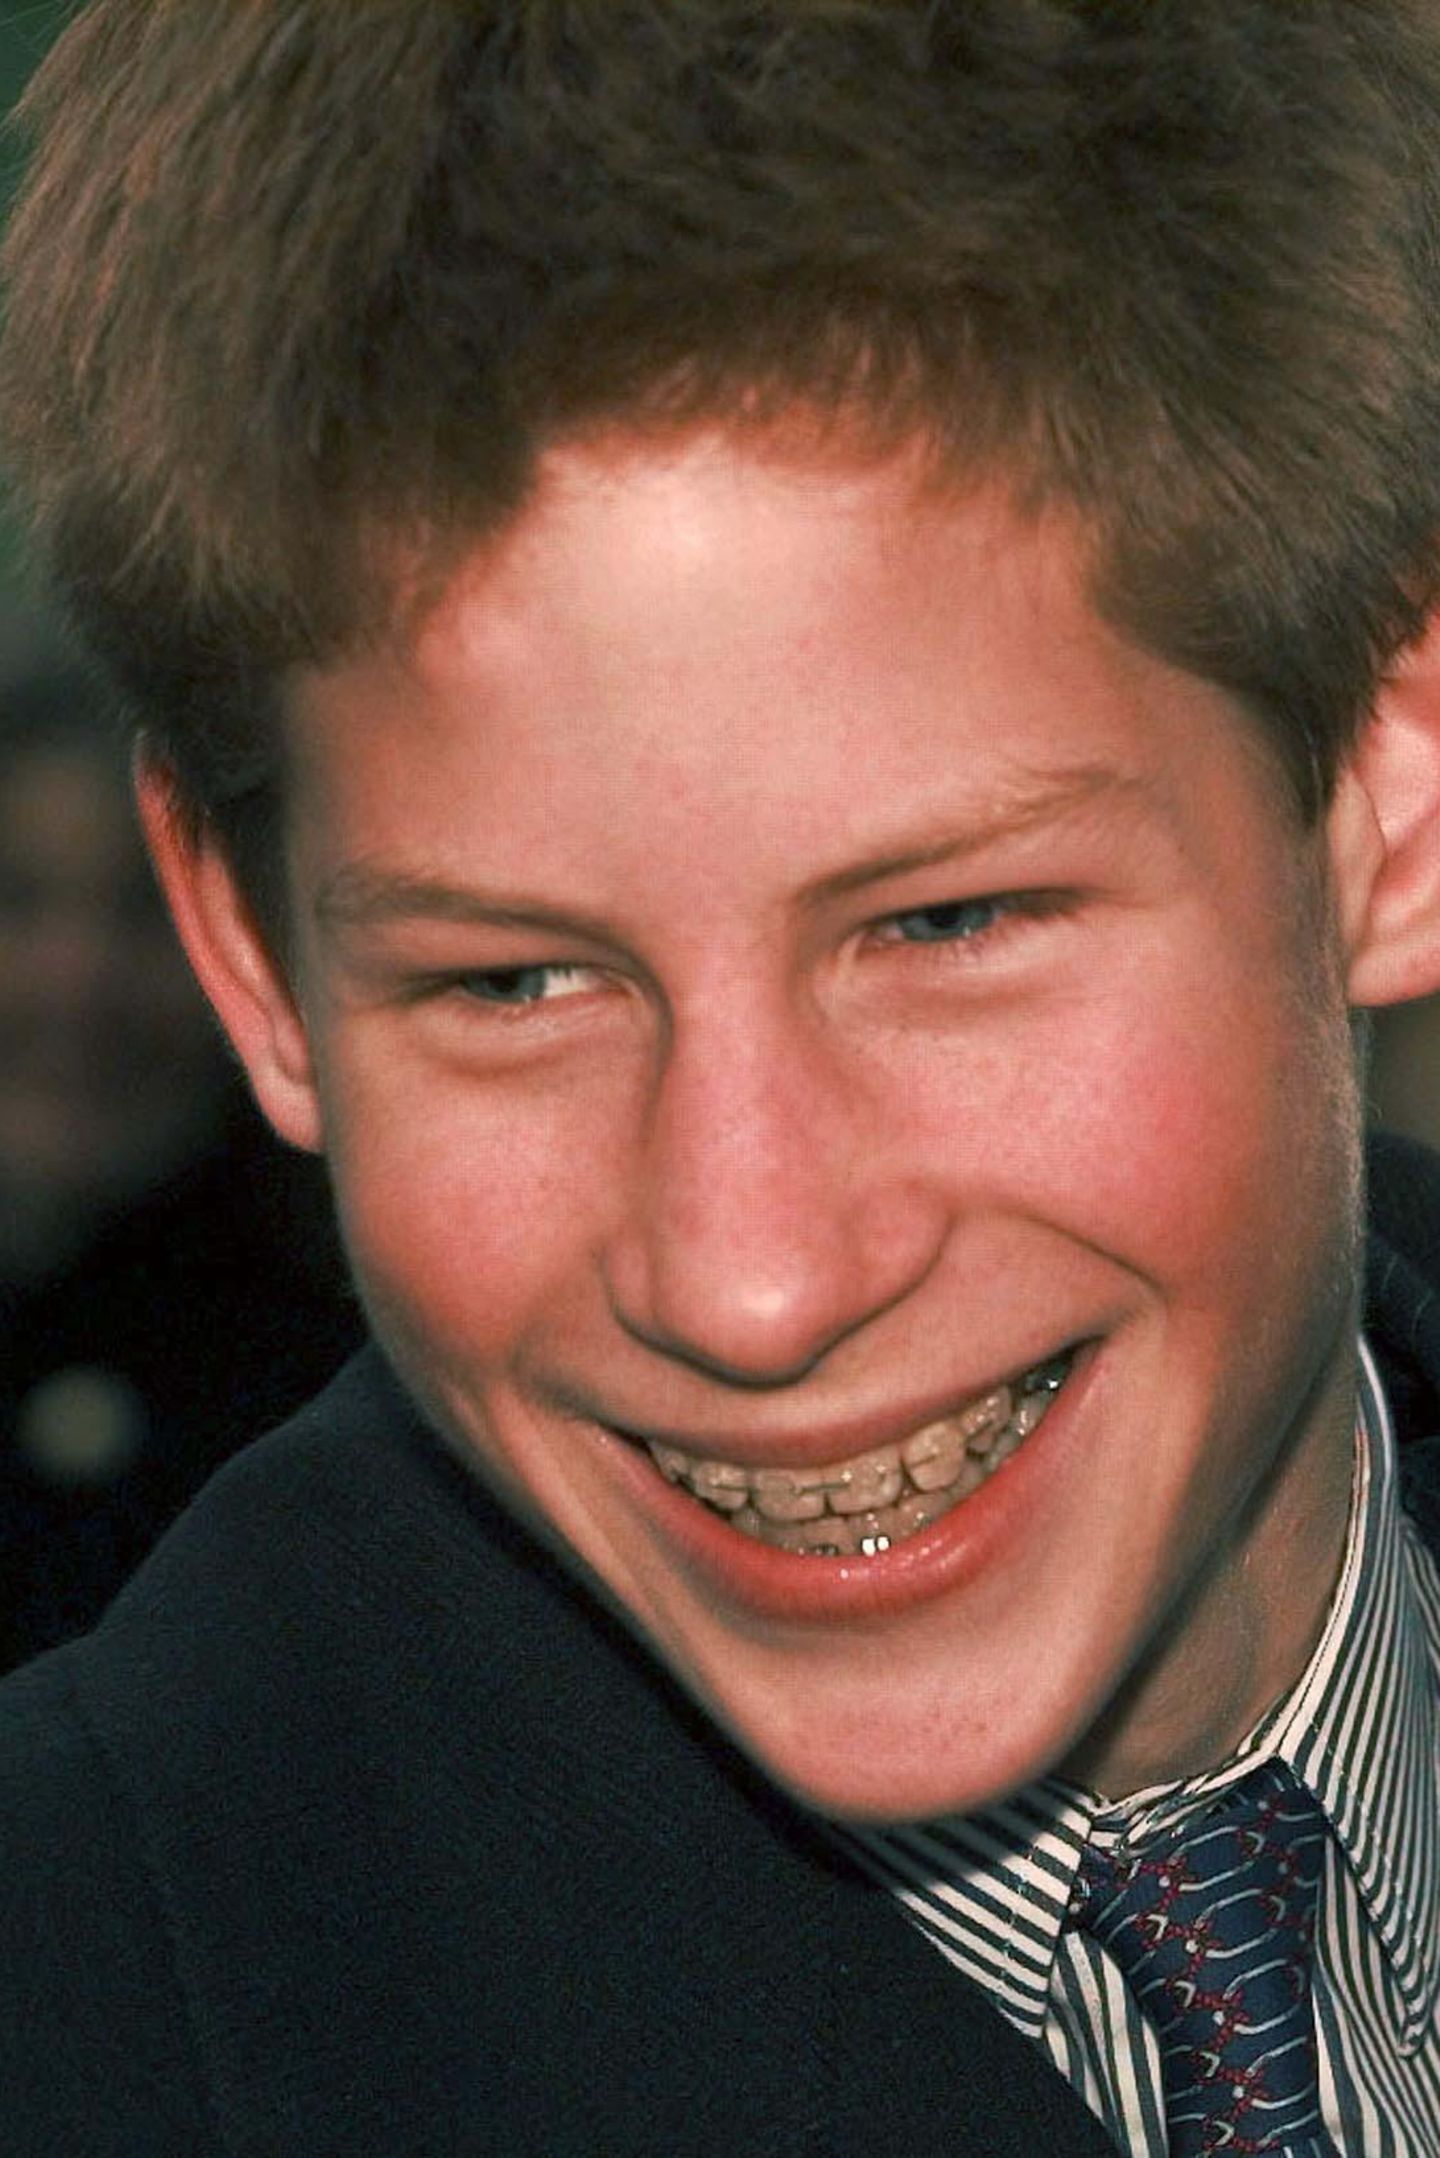 1999  Als Teenager muss Prinz Harry eine feste Zahnspange tragen - mit Erfolg. Heute sind seine Zähne absolut gerade und lückenlos.